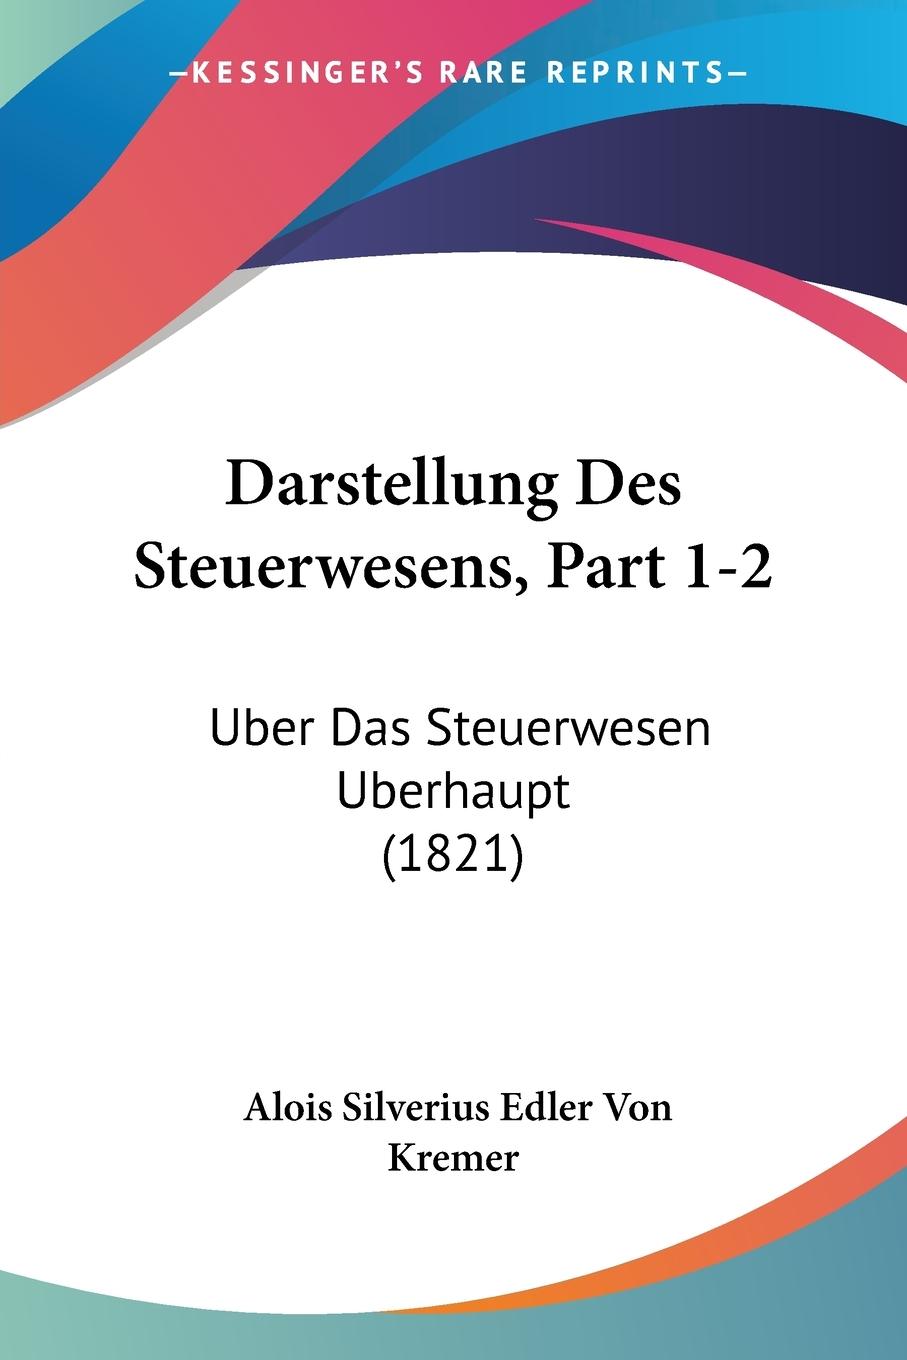 Darstellung Des Steuerwesens, Part 1-2 - Kremer, Alois Silverius Edler Von